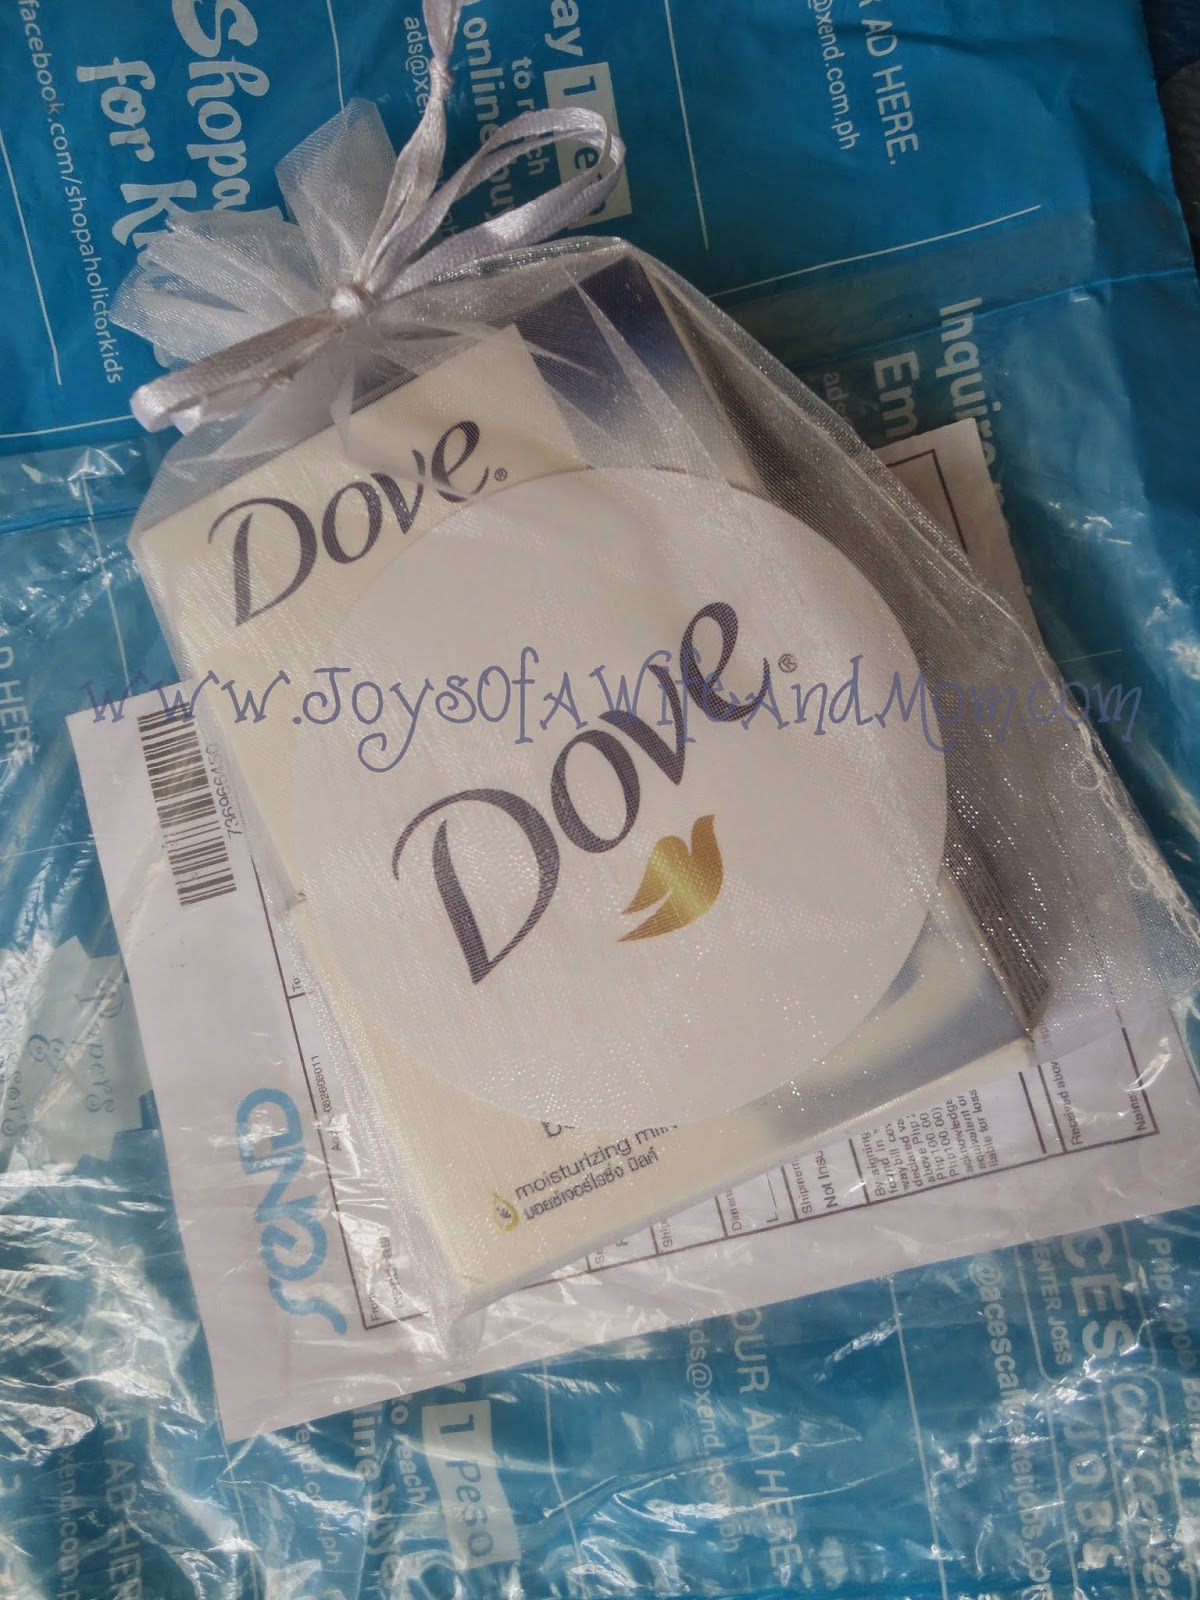 Free Dove Soap